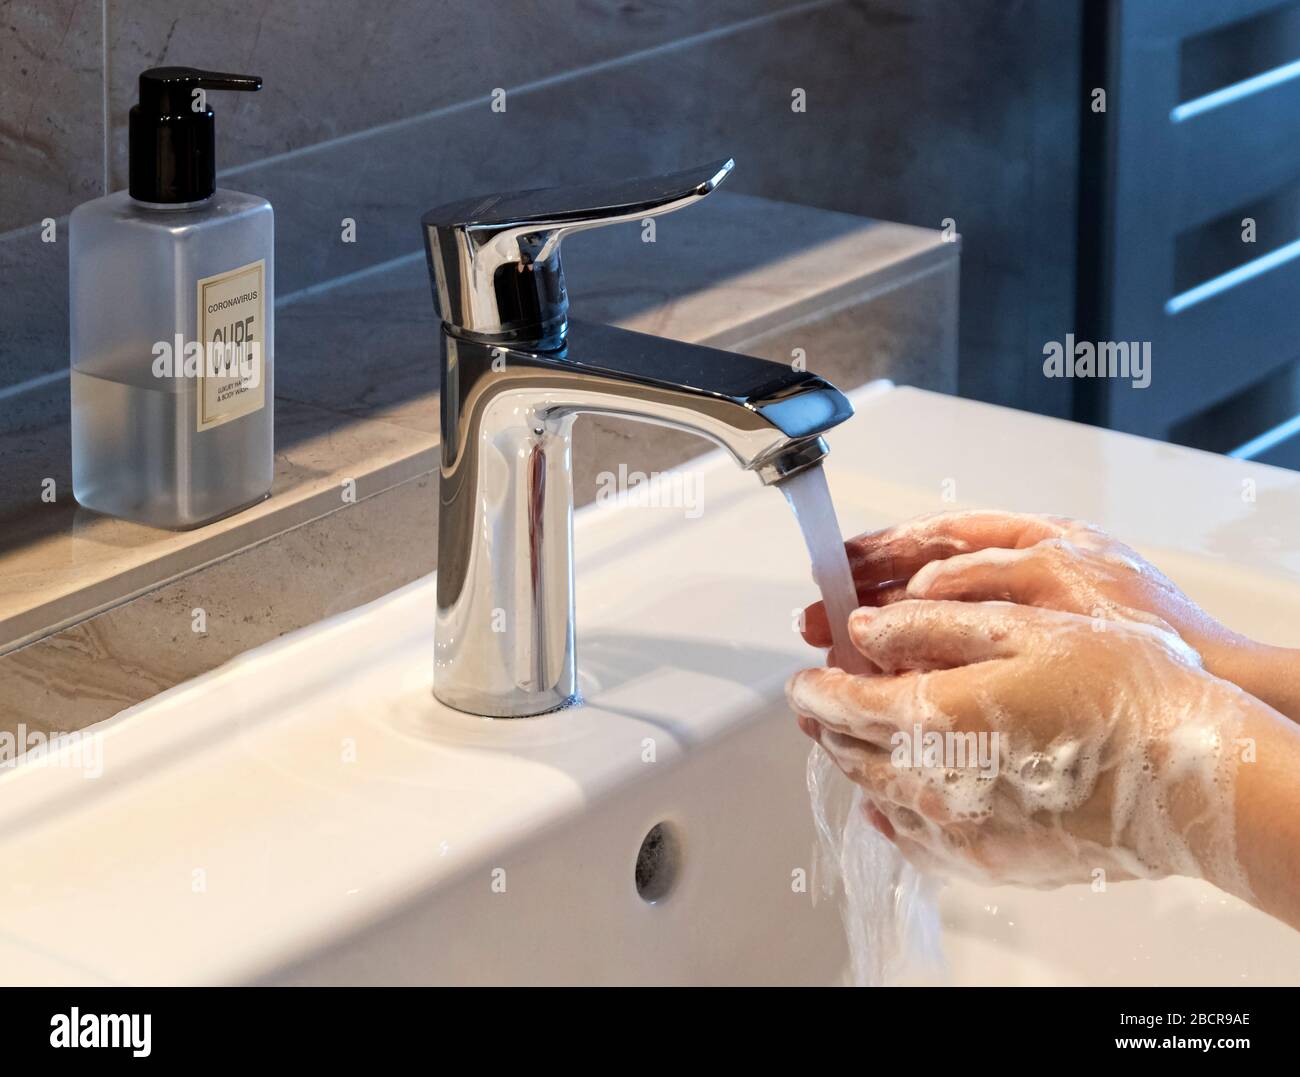 Covid-19 ou Coronavirus avec Cure écrit sur le distributeur de savon pour réduire la contamination des mains de lavage dans le cadre moderne de salle de bains Banque D'Images